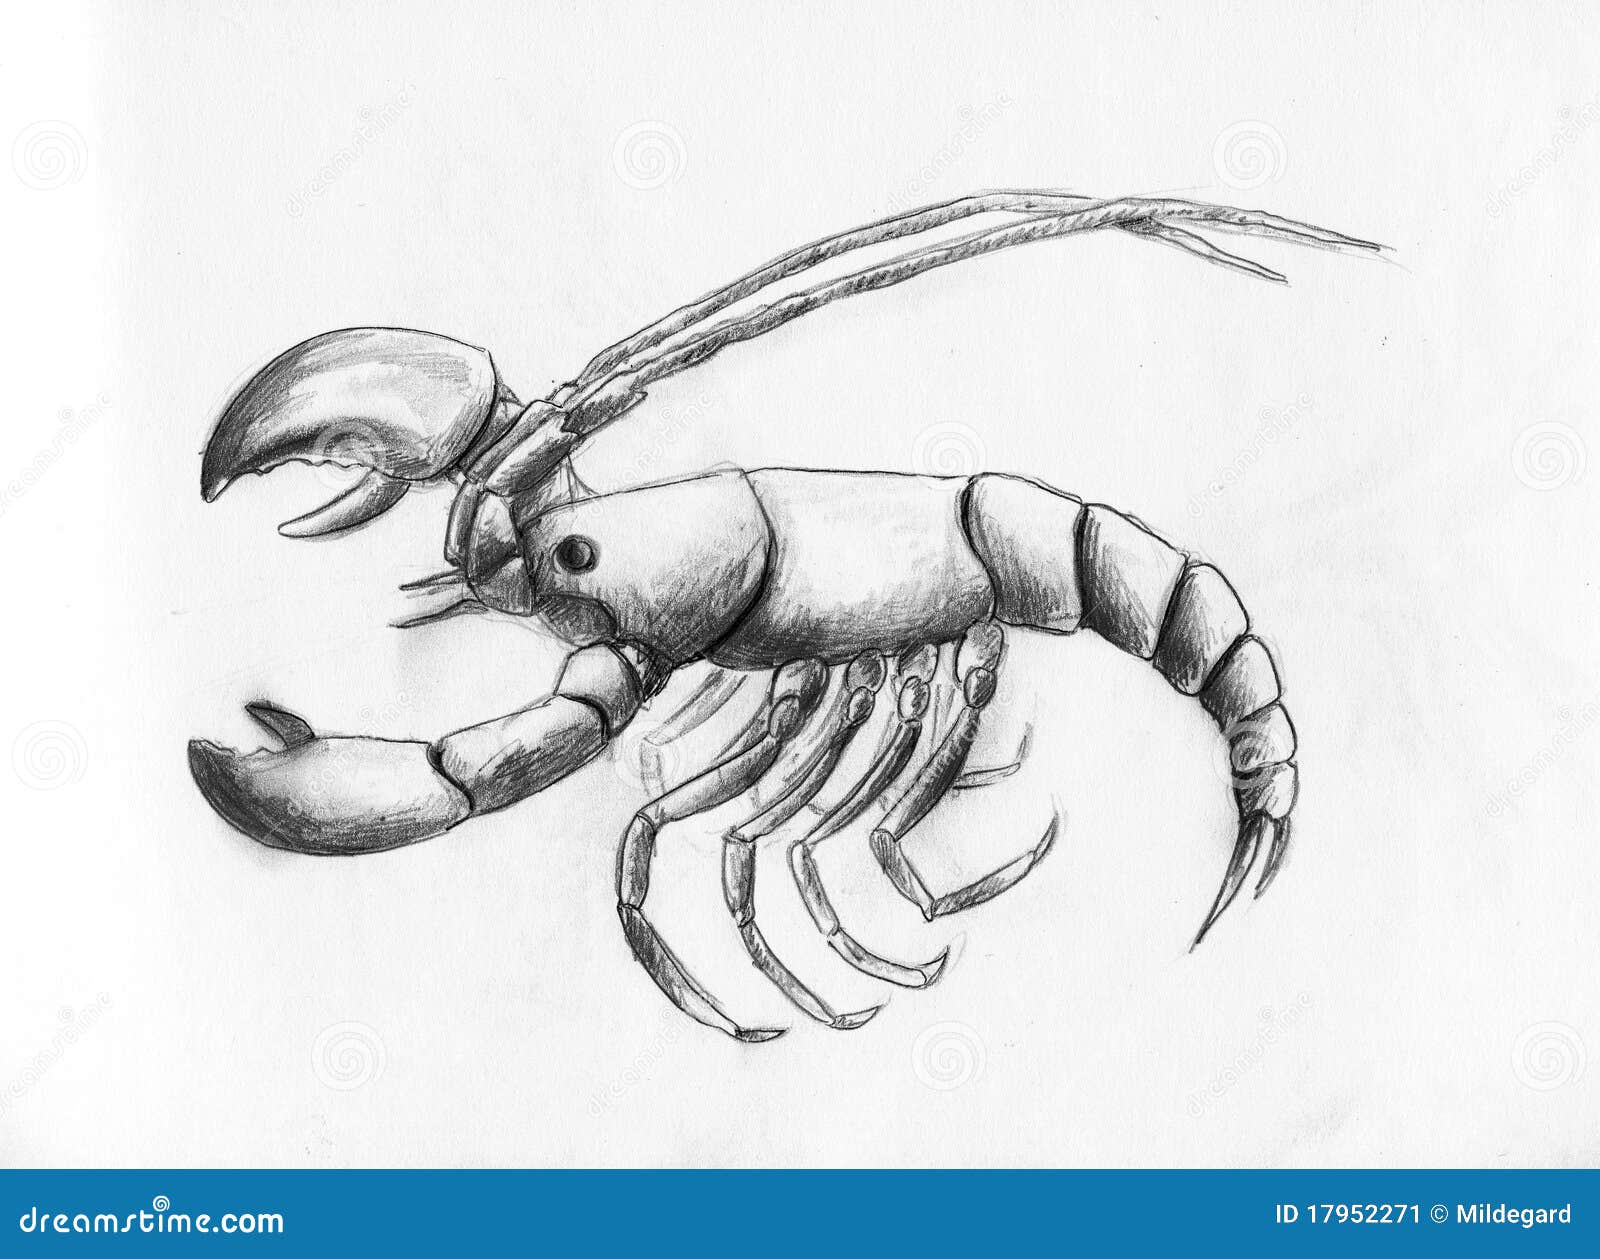 Lobster Sketch Vector Images over 1900